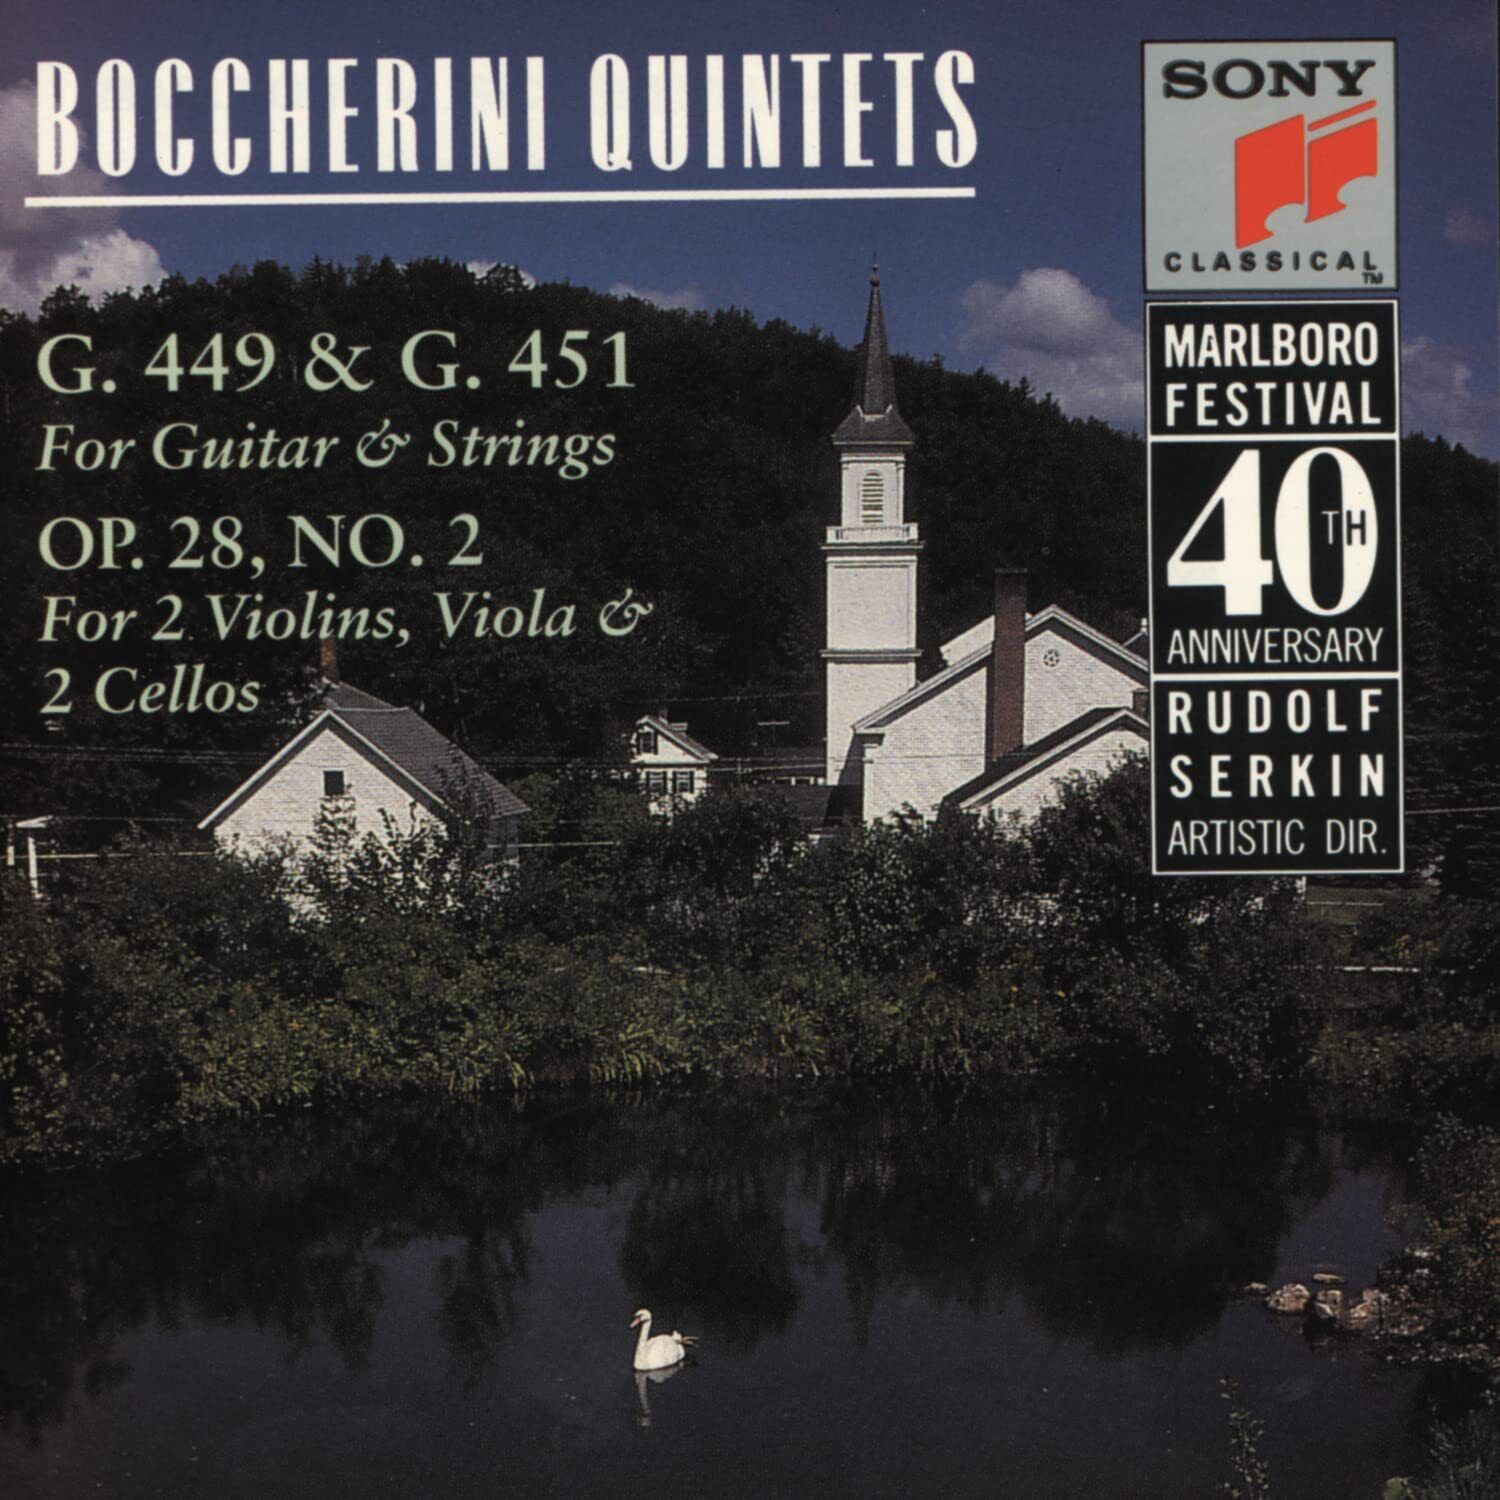 Luigi Boccherini Boccherini Quintets Marlboro Festival 40th Anniversary (CD)